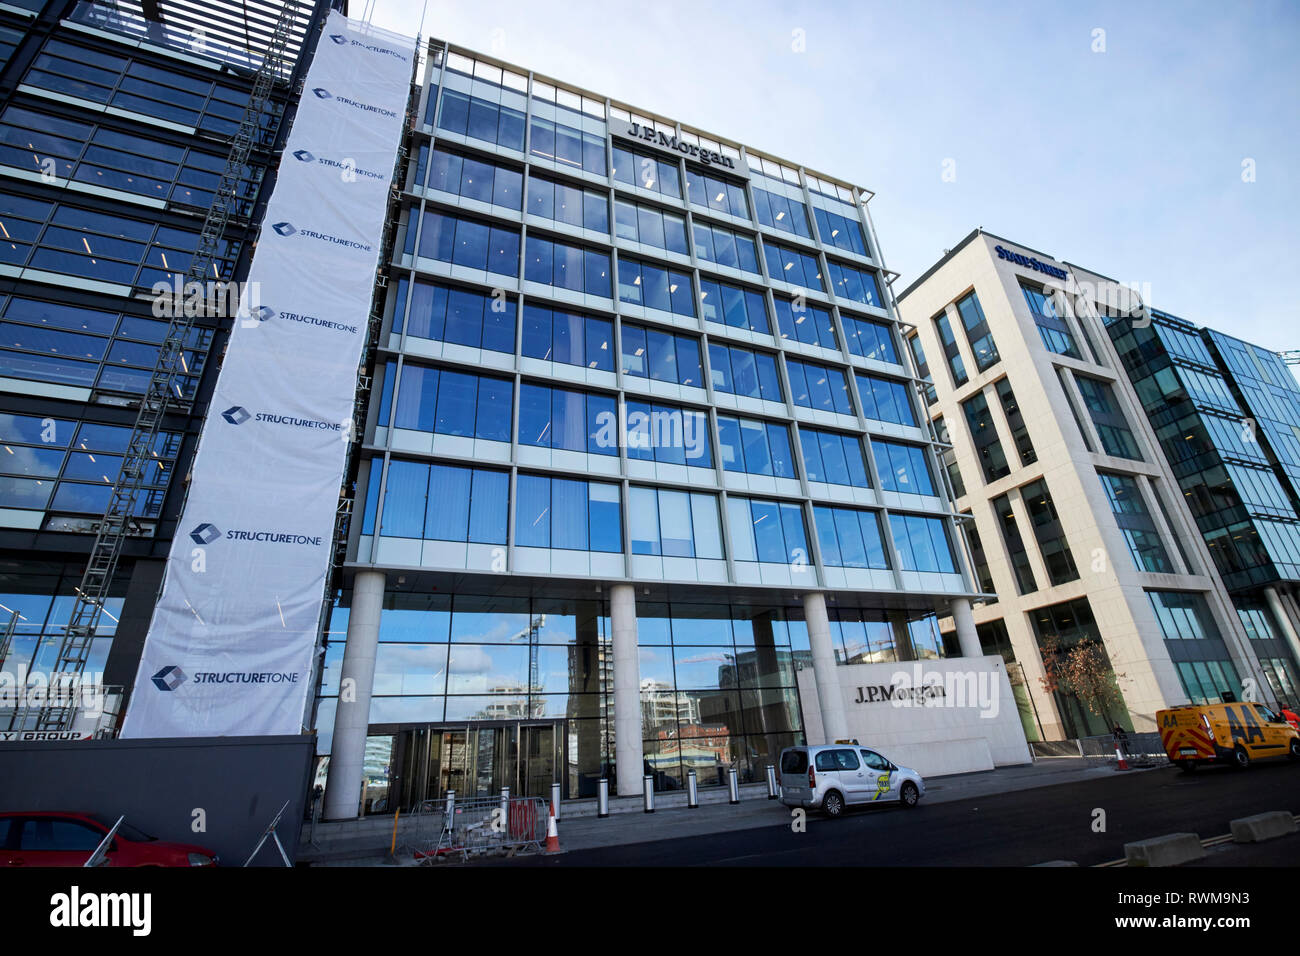 JP Morgan bureaux de dublin 200 quai de la capitale Dublin République d'Irlande Banque D'Images